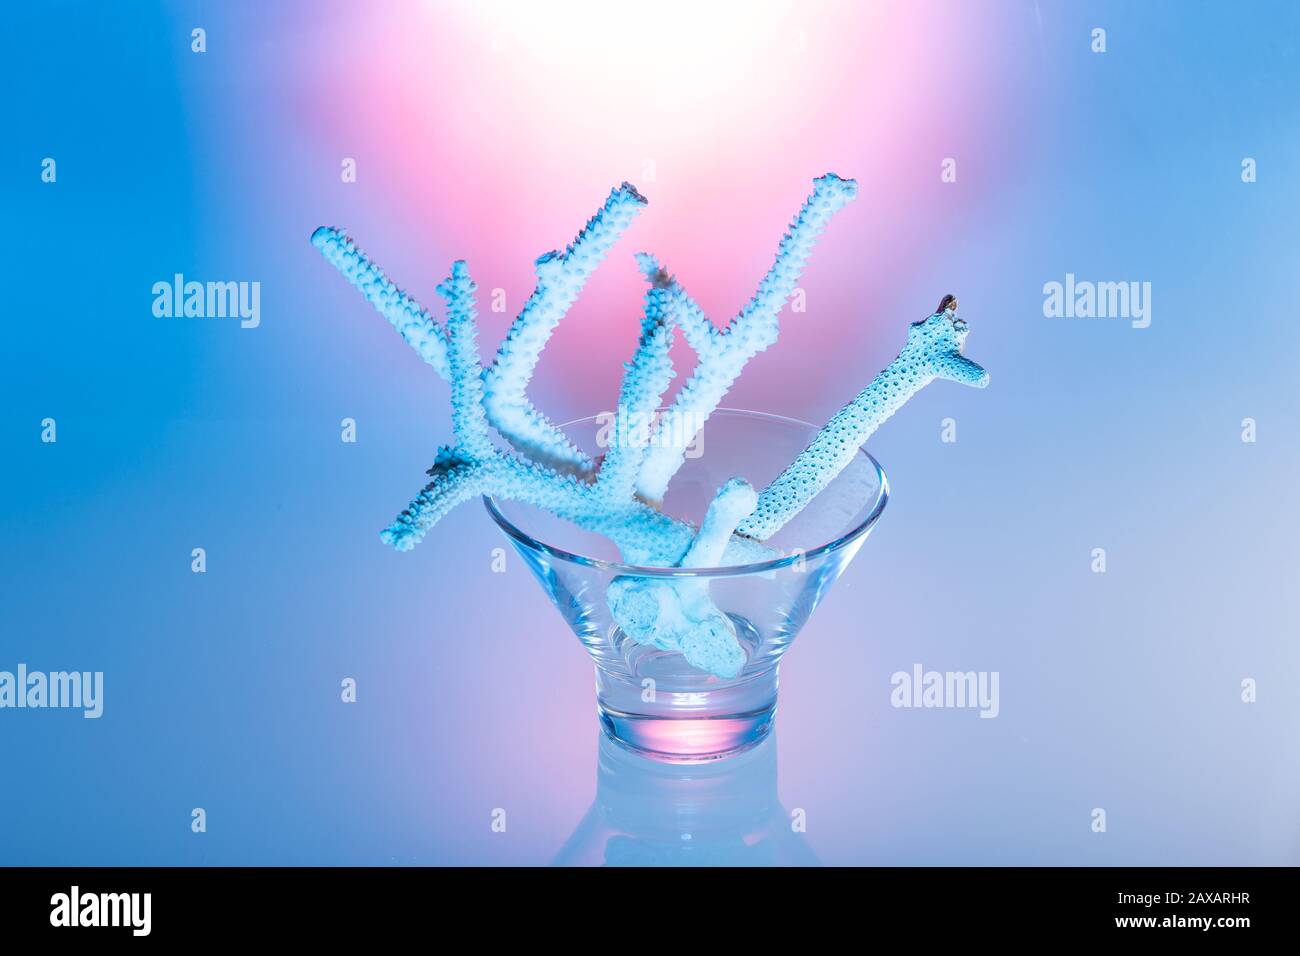 Corail blanc en lumière bleue dans un bol en verre autour d'un fond bleu Banque D'Images